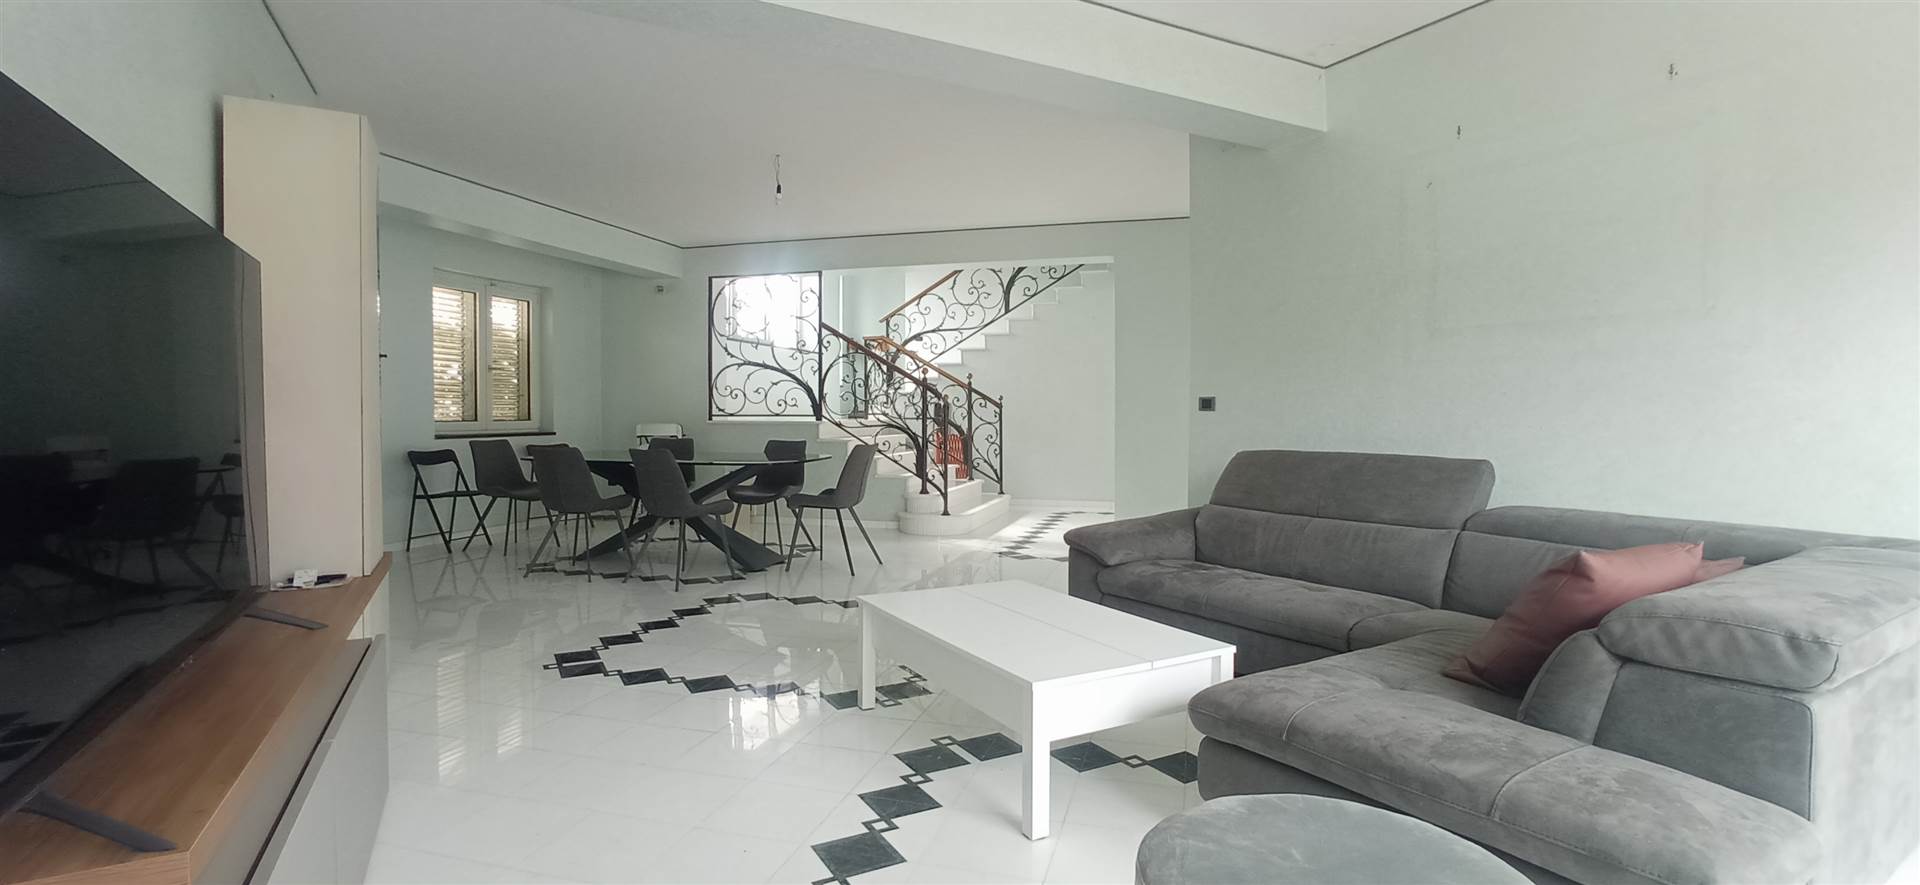 Villa in vendita a Atripalda, 8 locali, prezzo € 239.000 | PortaleAgenzieImmobiliari.it